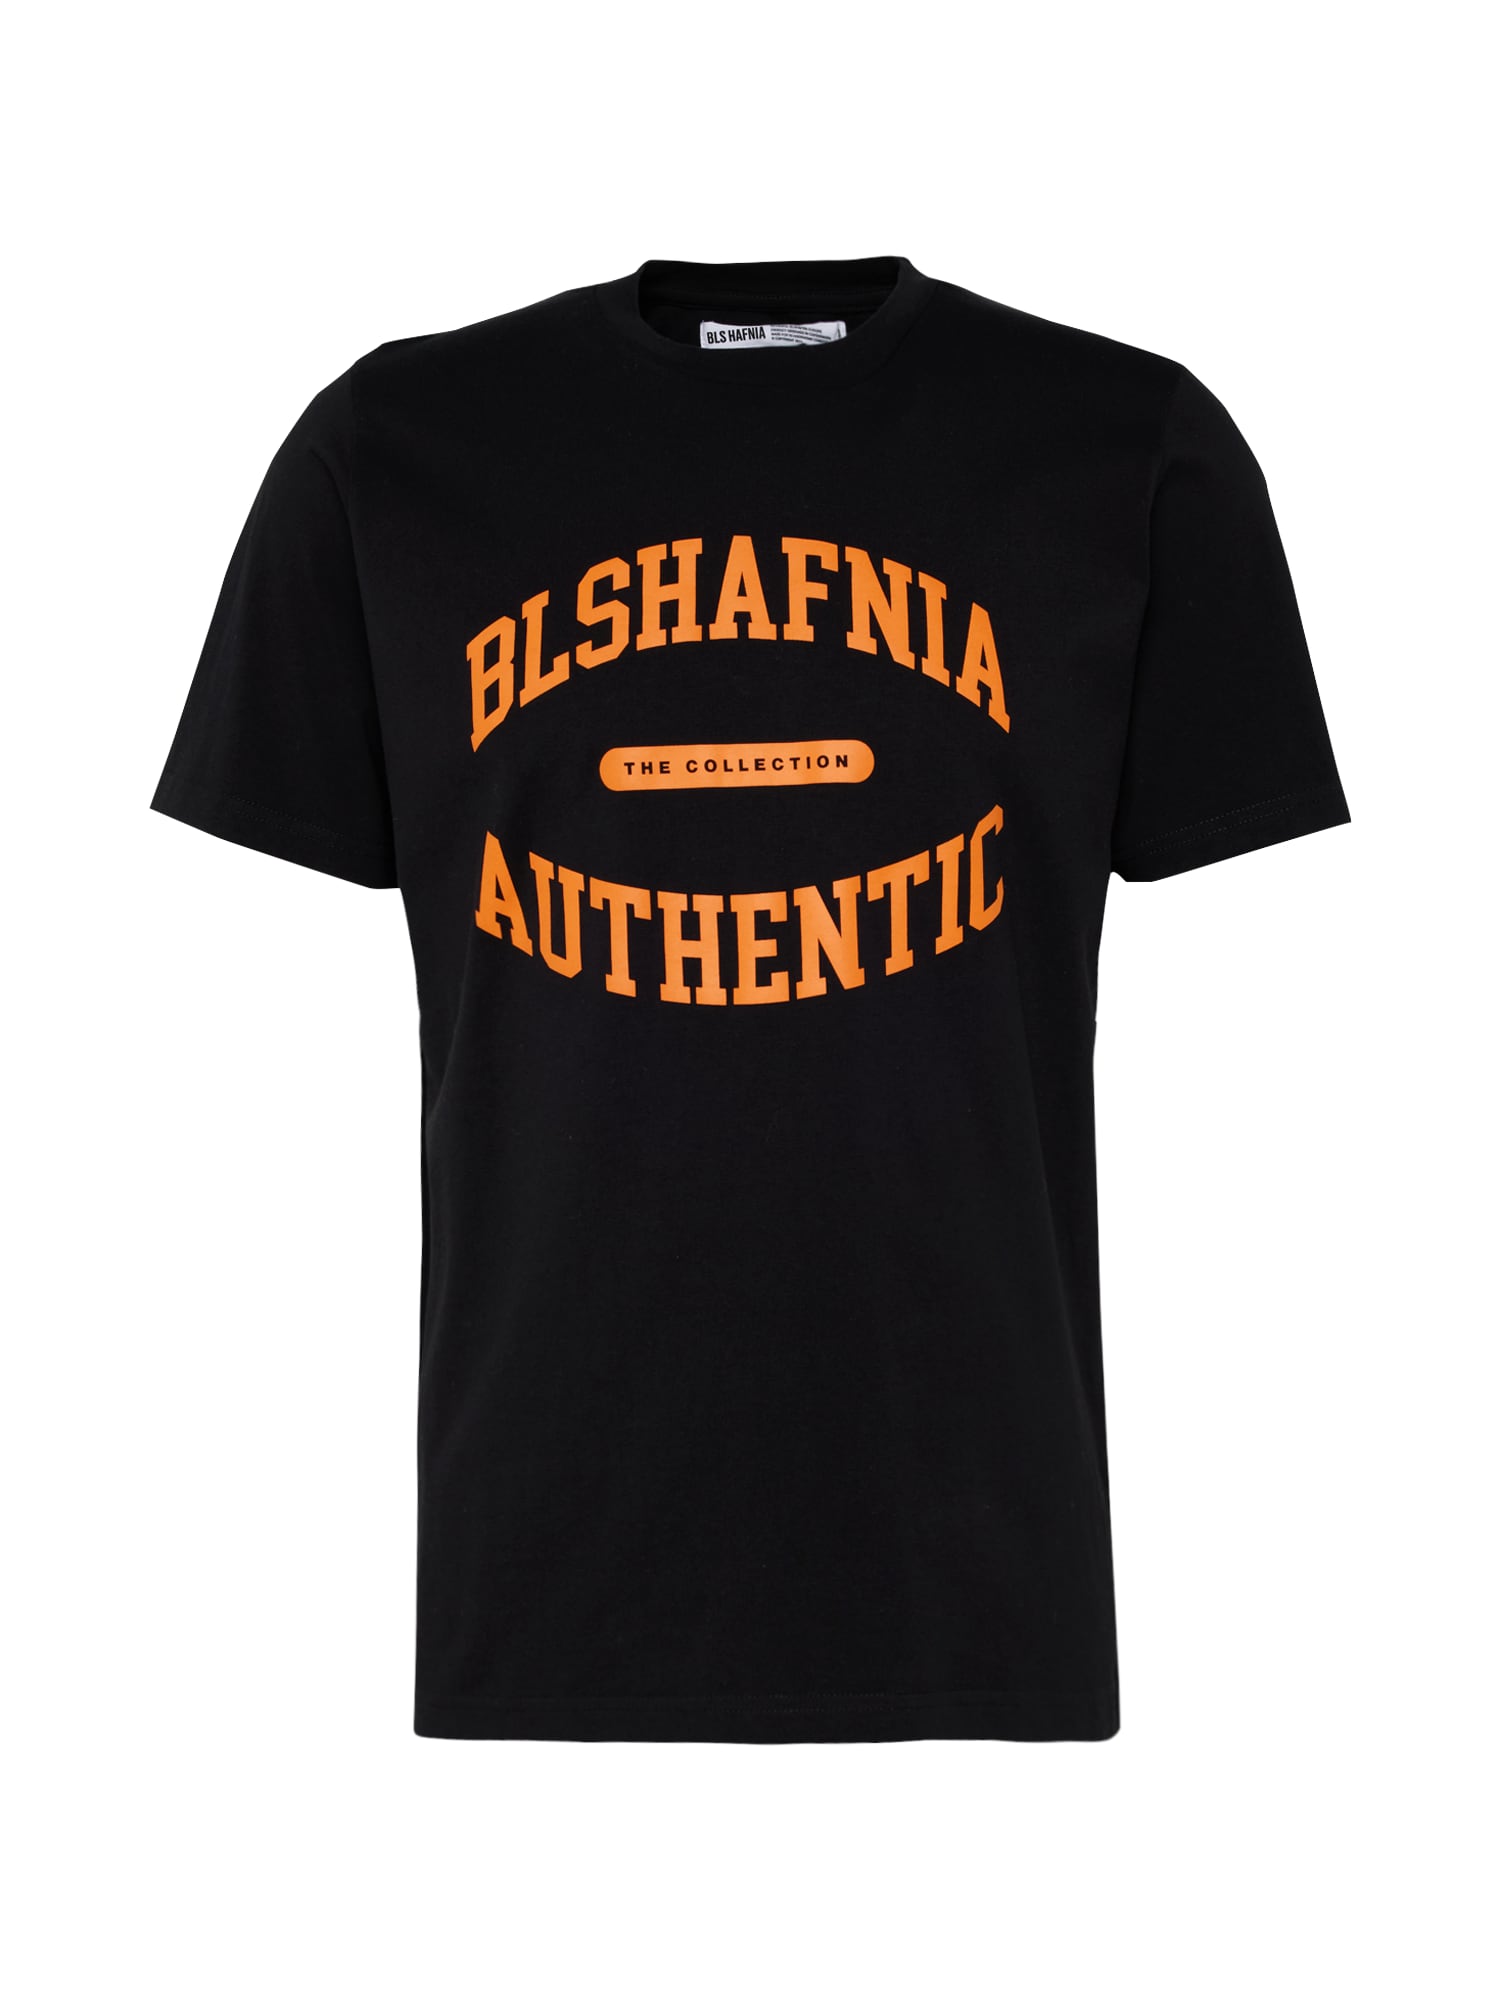 BLS HAFNIA Marškinėliai tamsiai oranžinė / juoda